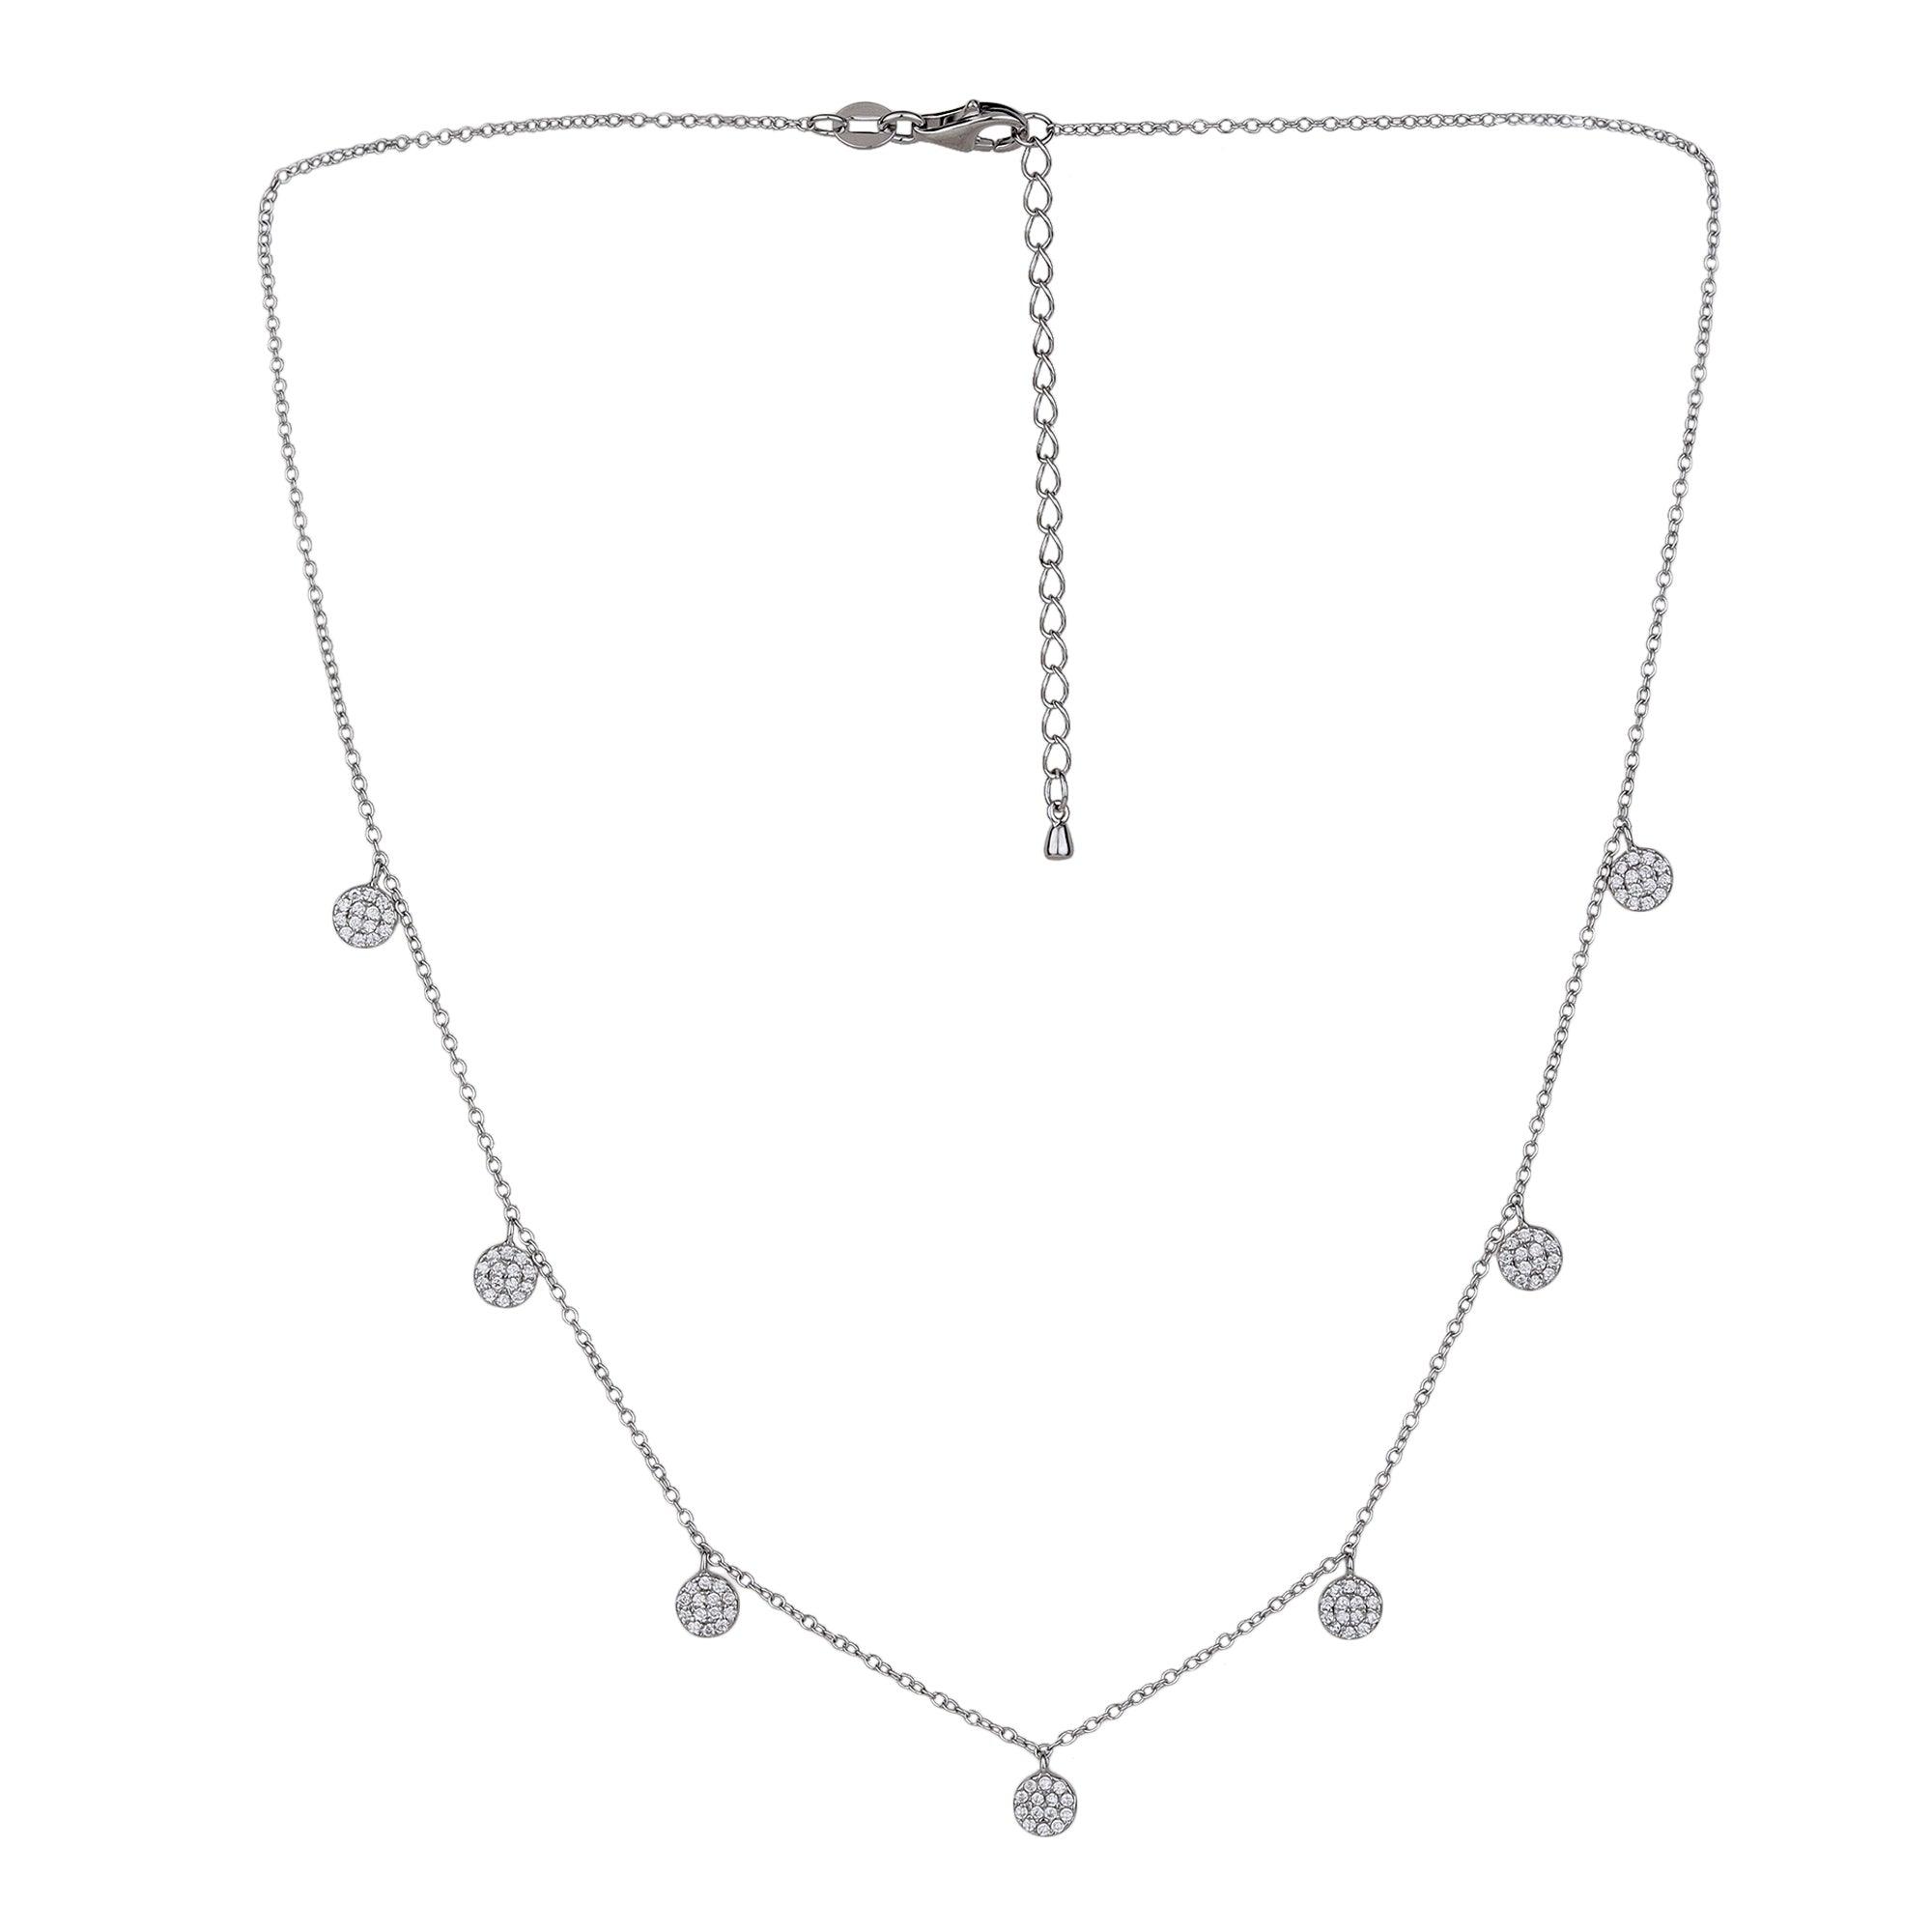 Seven Drop Necklace - silvermark